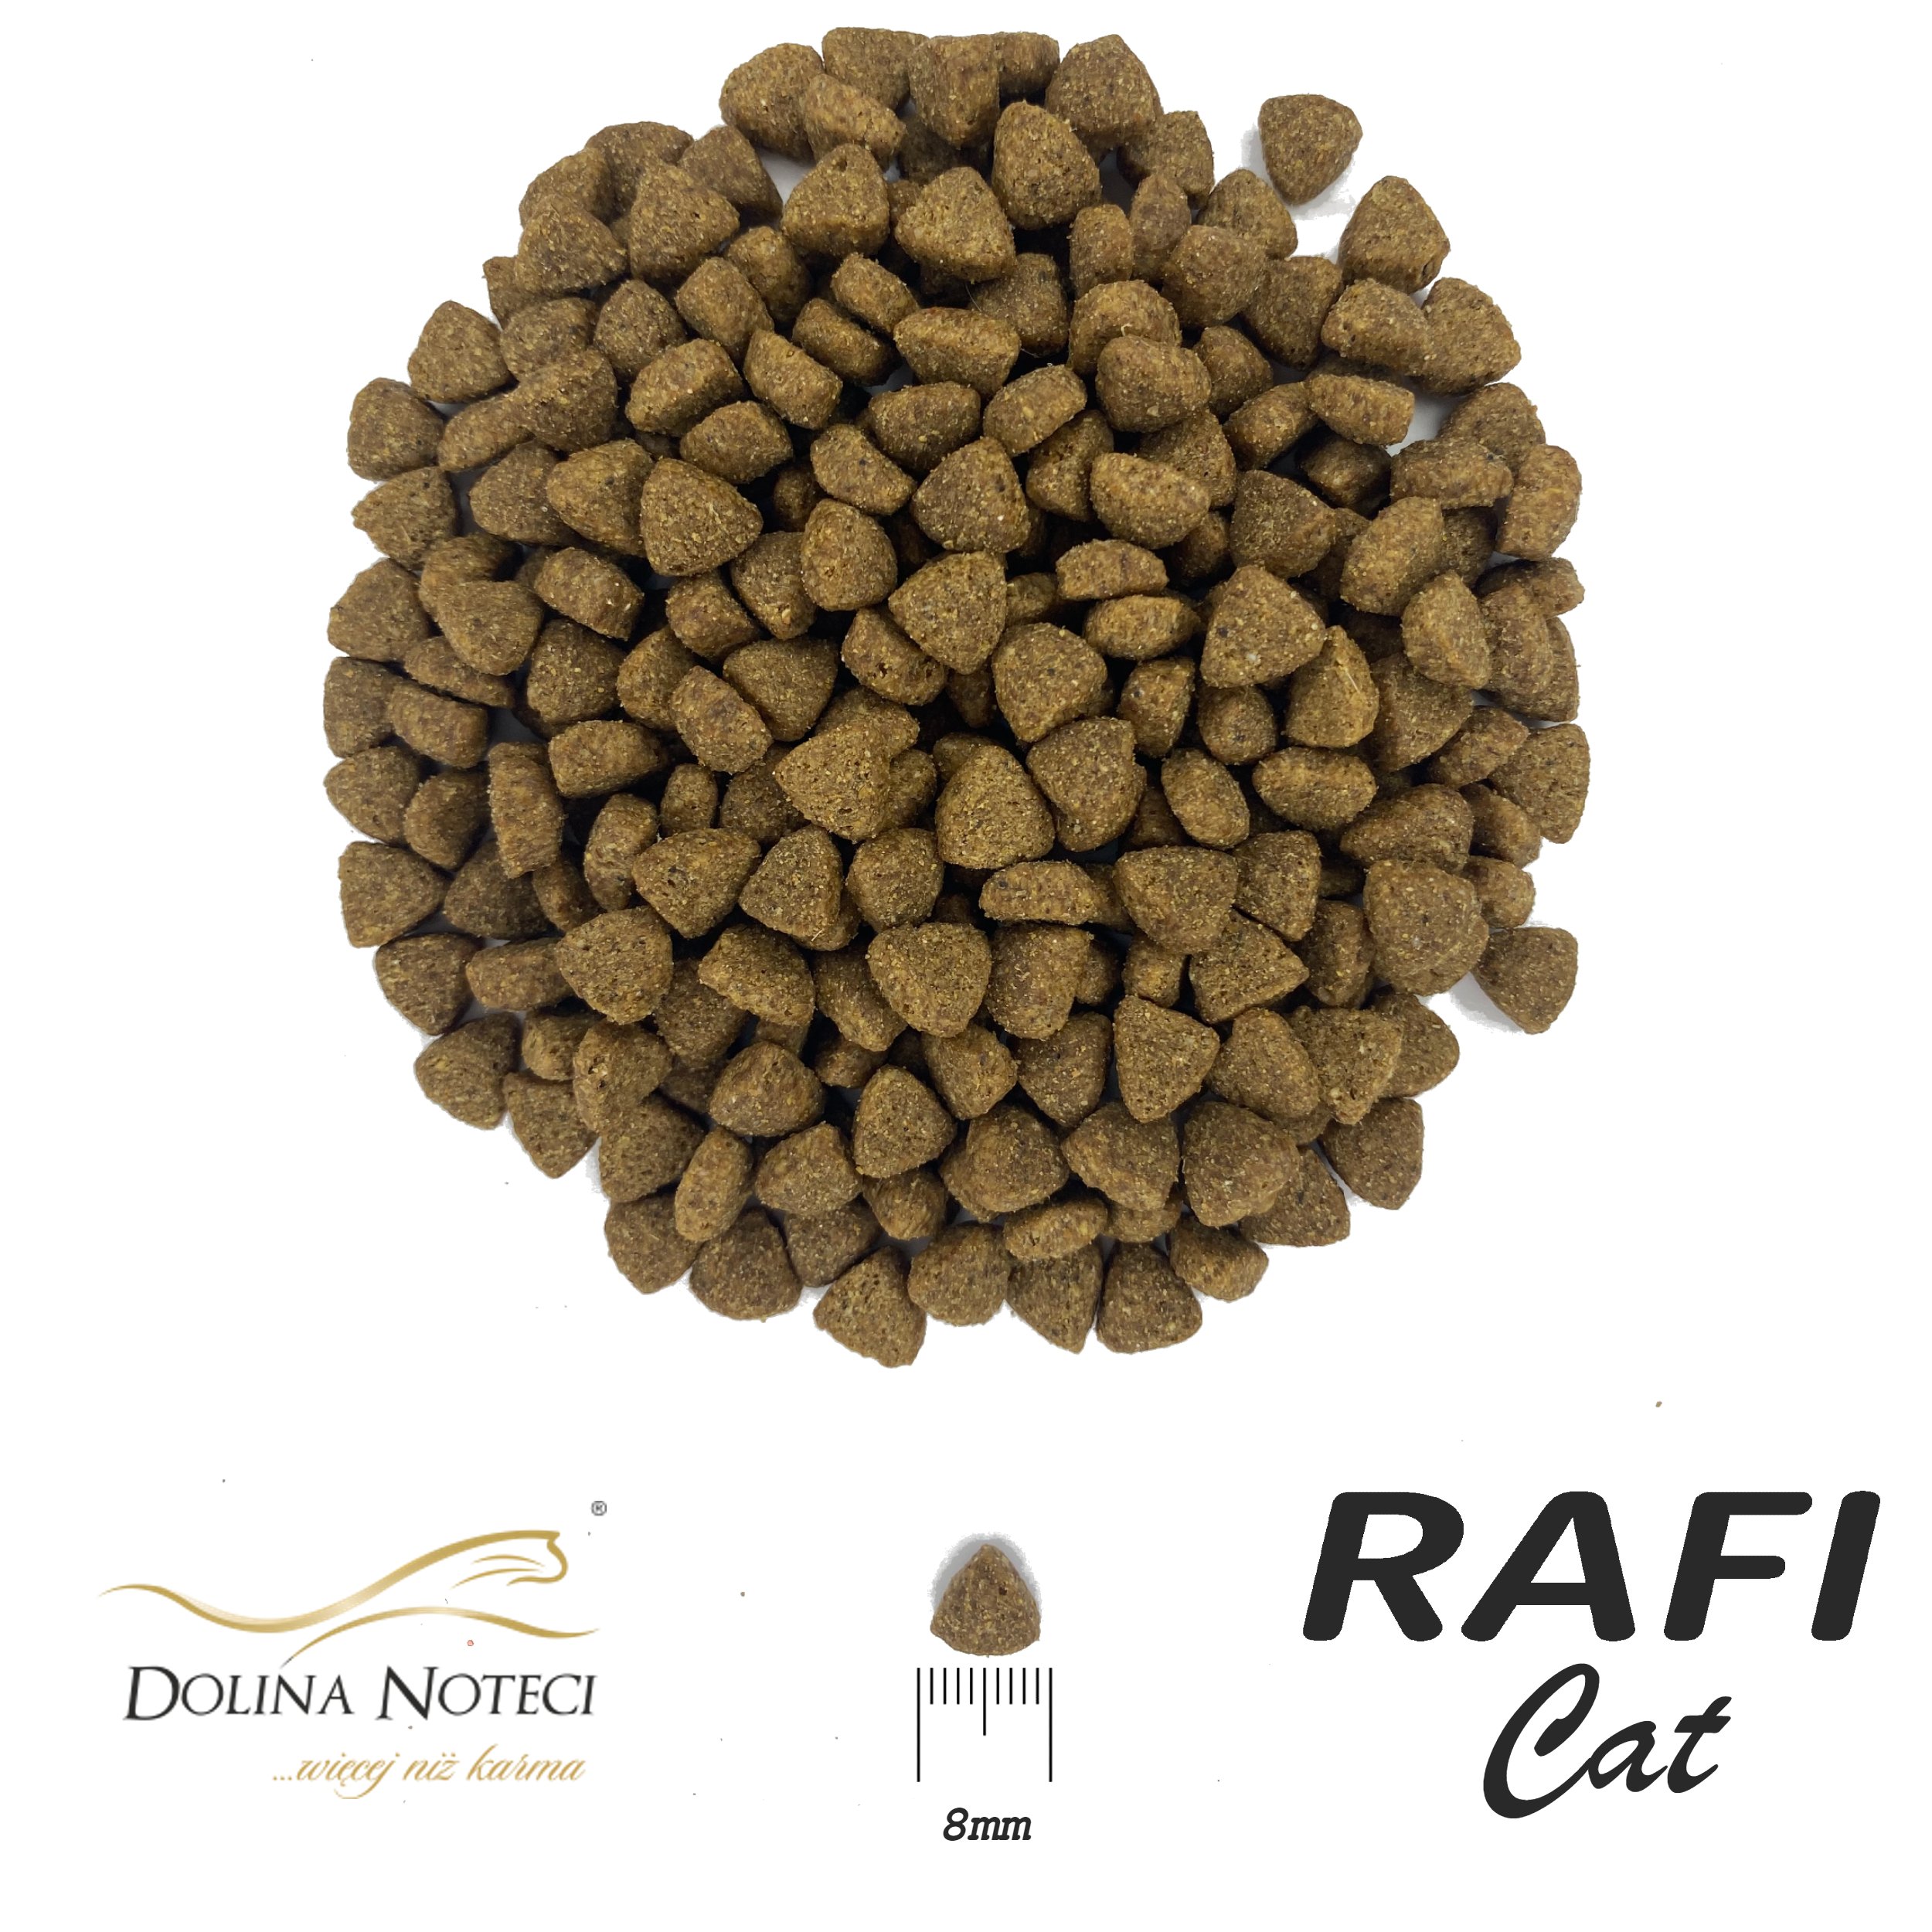 Сухой корм для взрослых котов Dolina Noteci Rafi Сat с ягненком 7 кг - фото 2